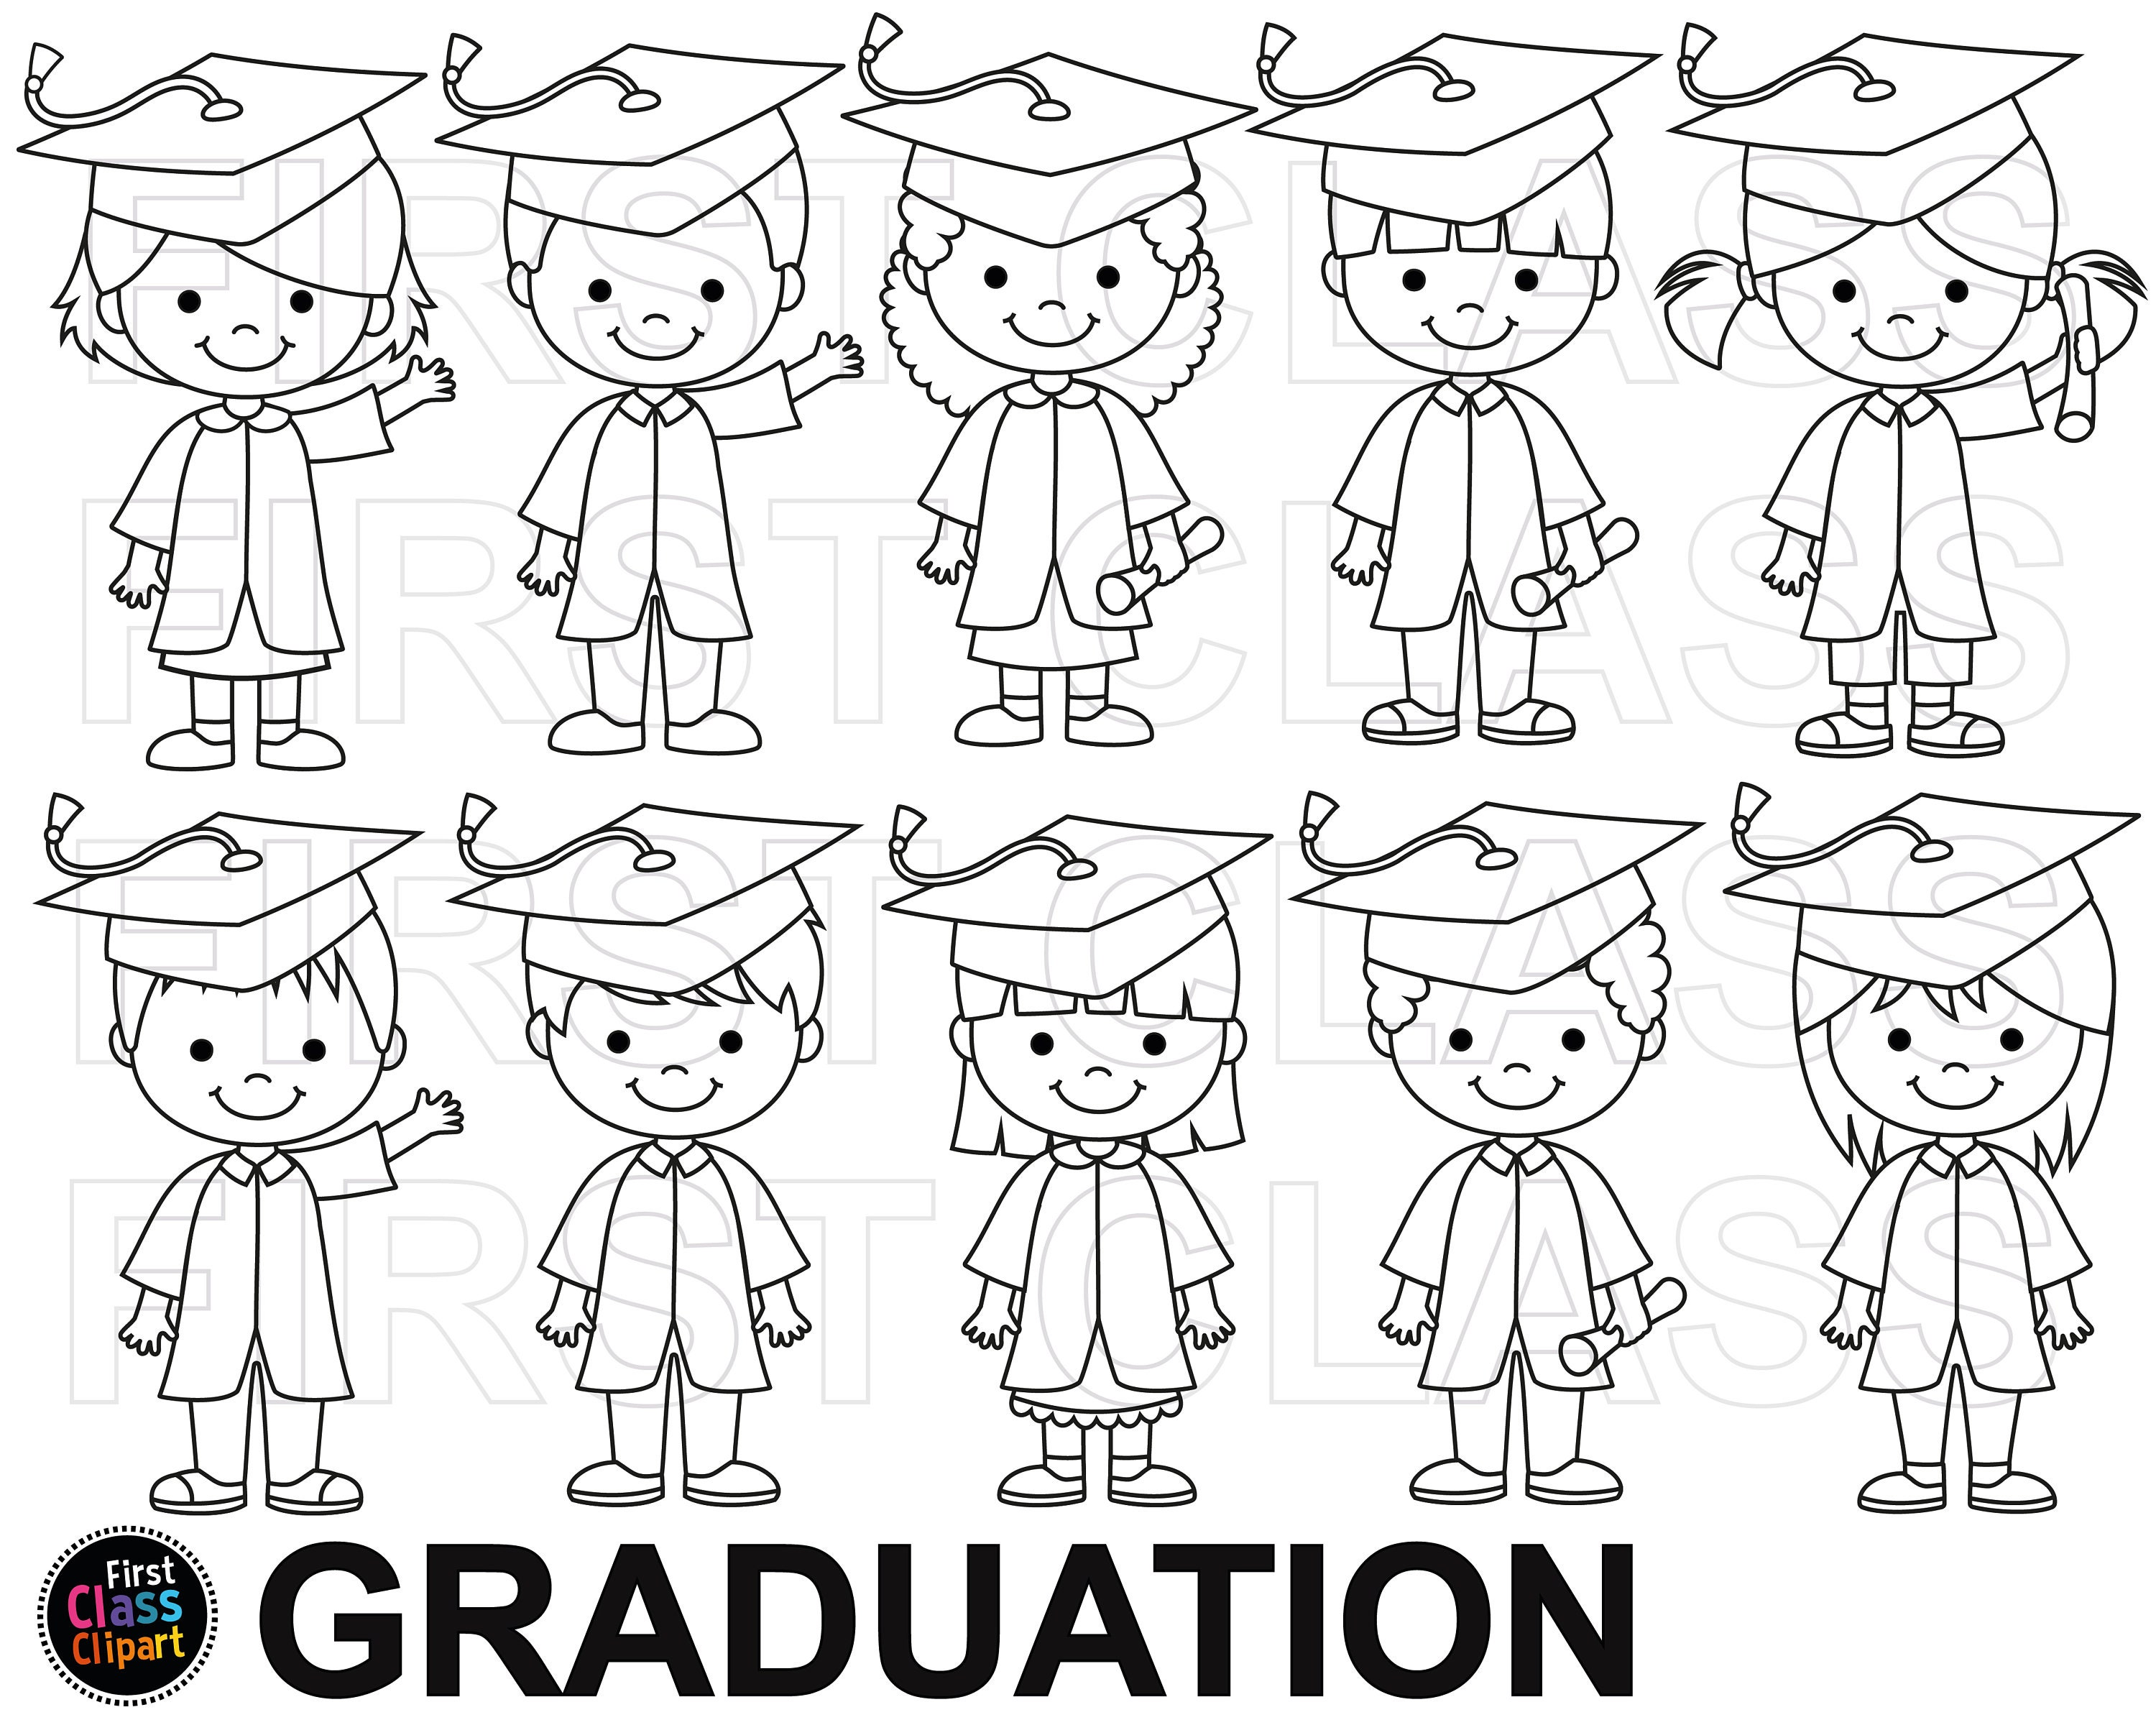 preschool graduation clip art black and white